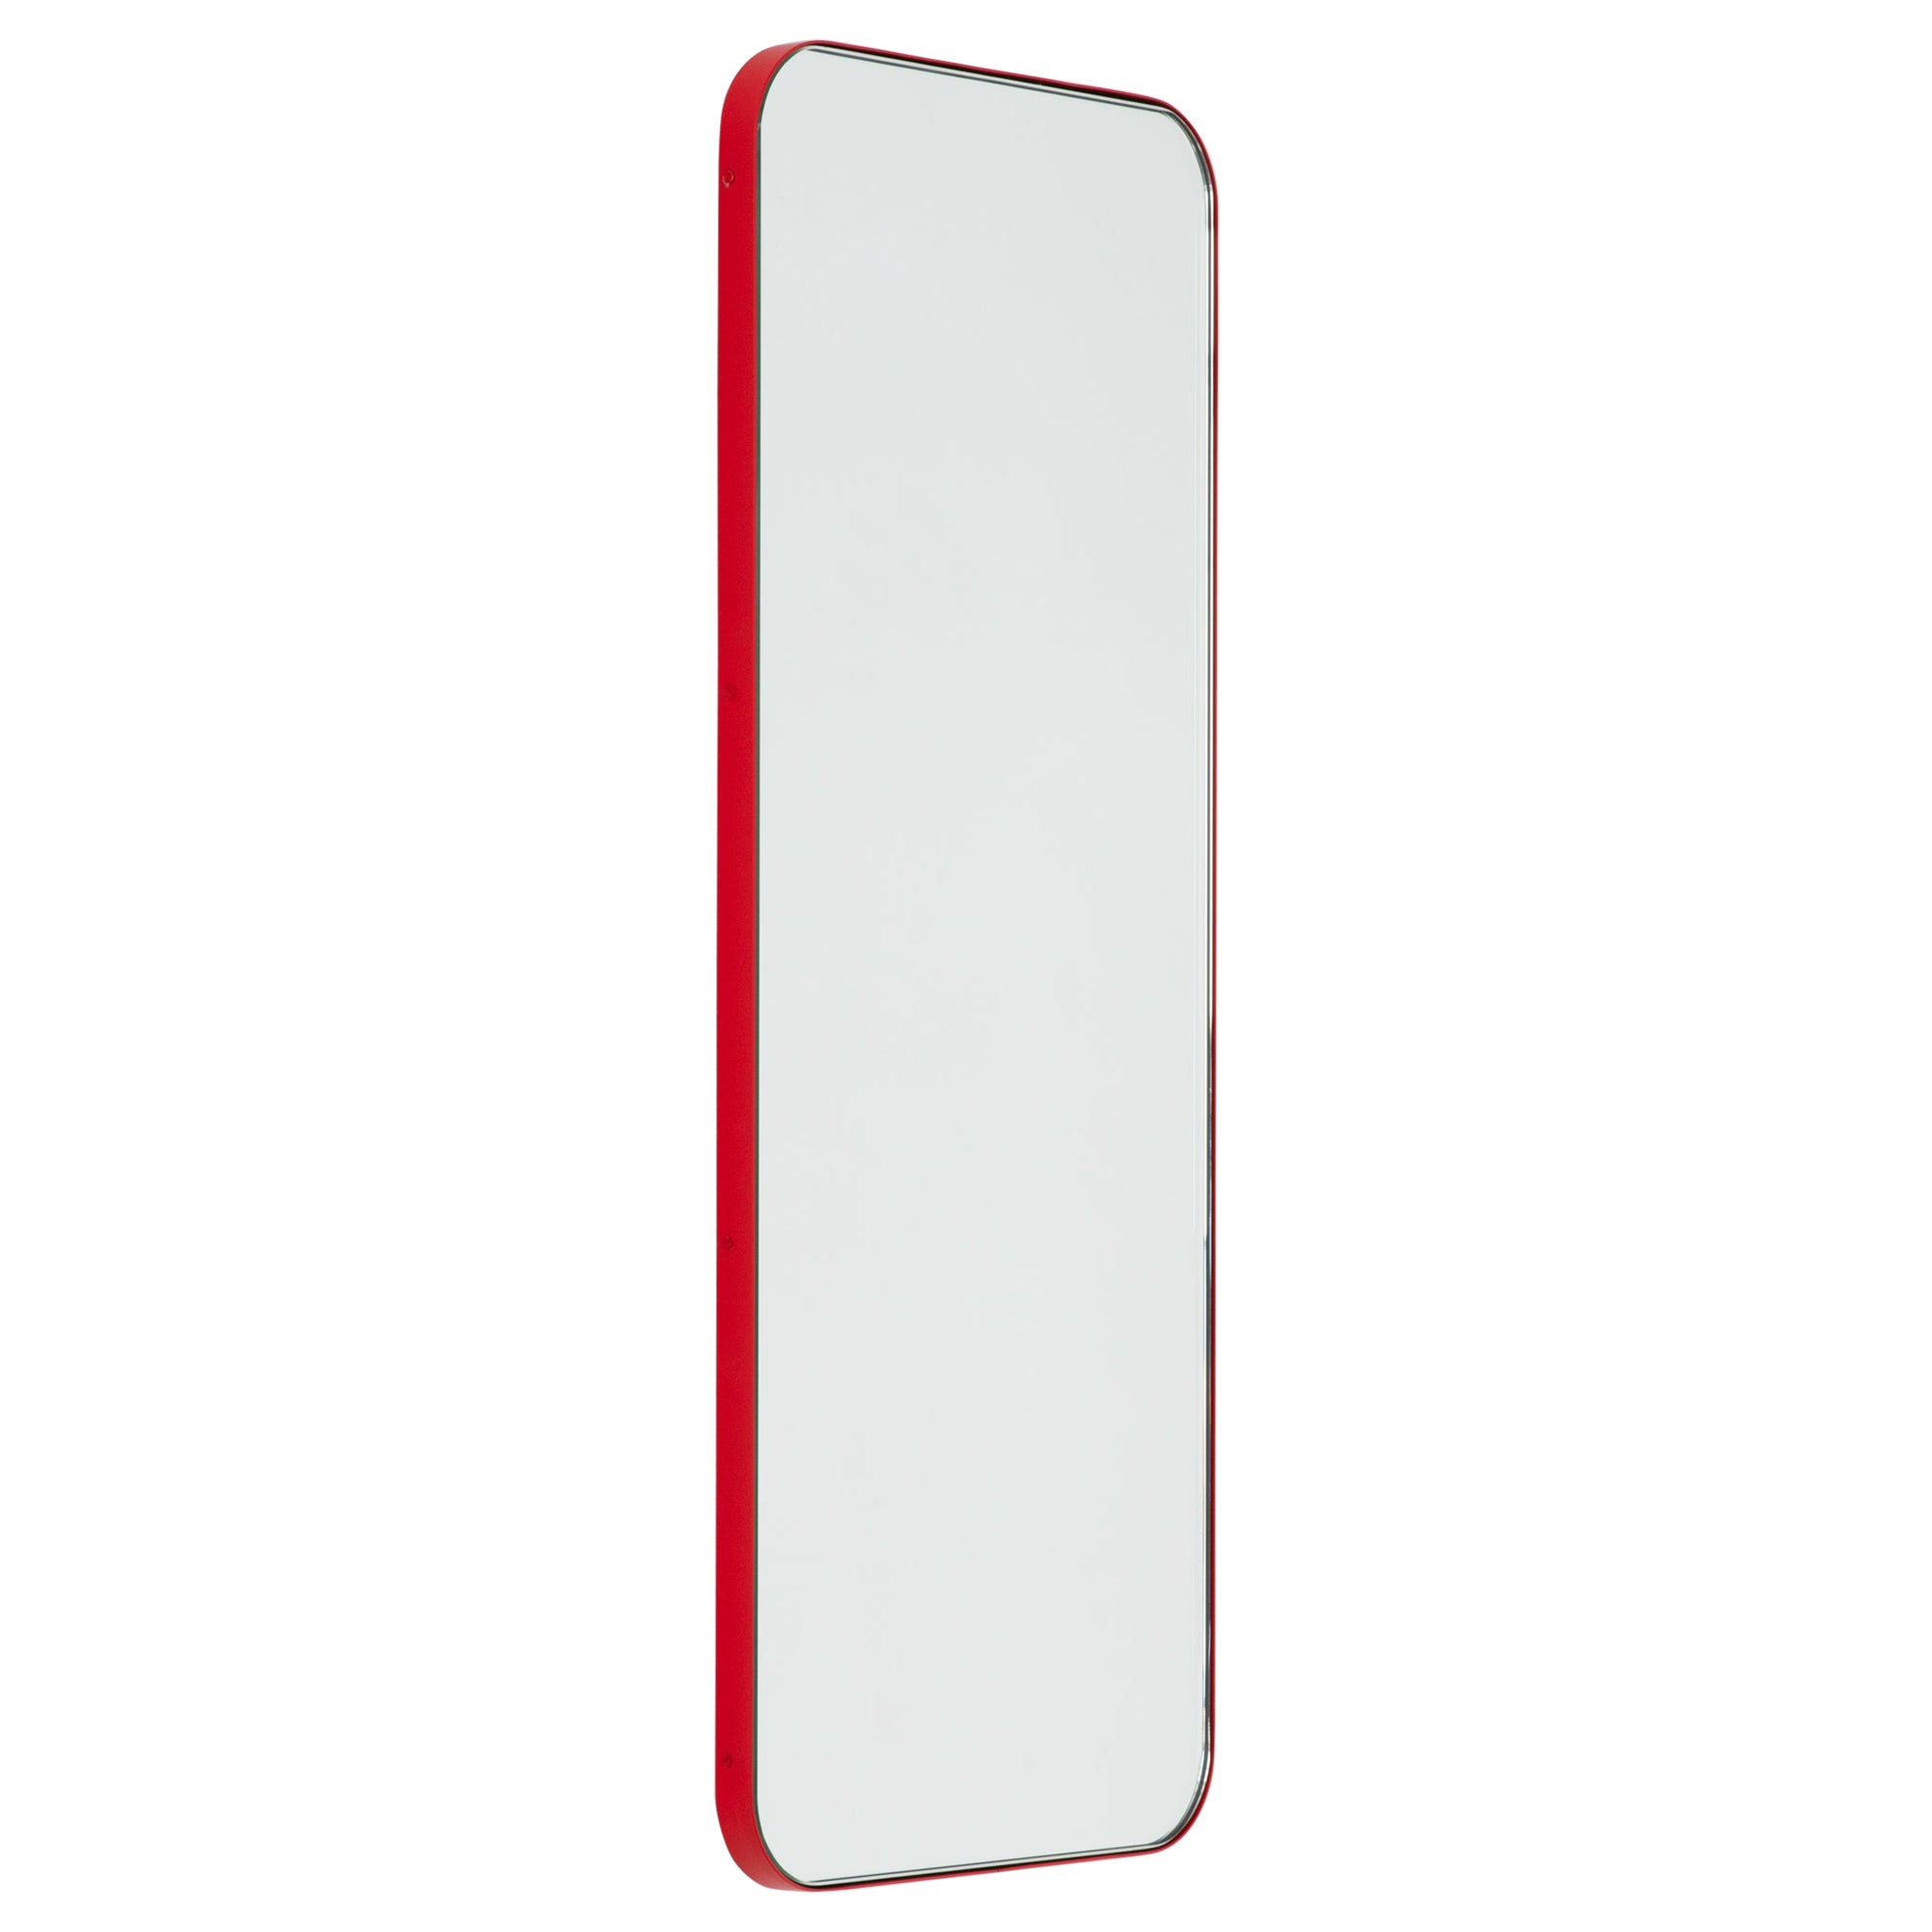 Quadris Rectangular Modern Spiegel mit rotem Rahmen, XL